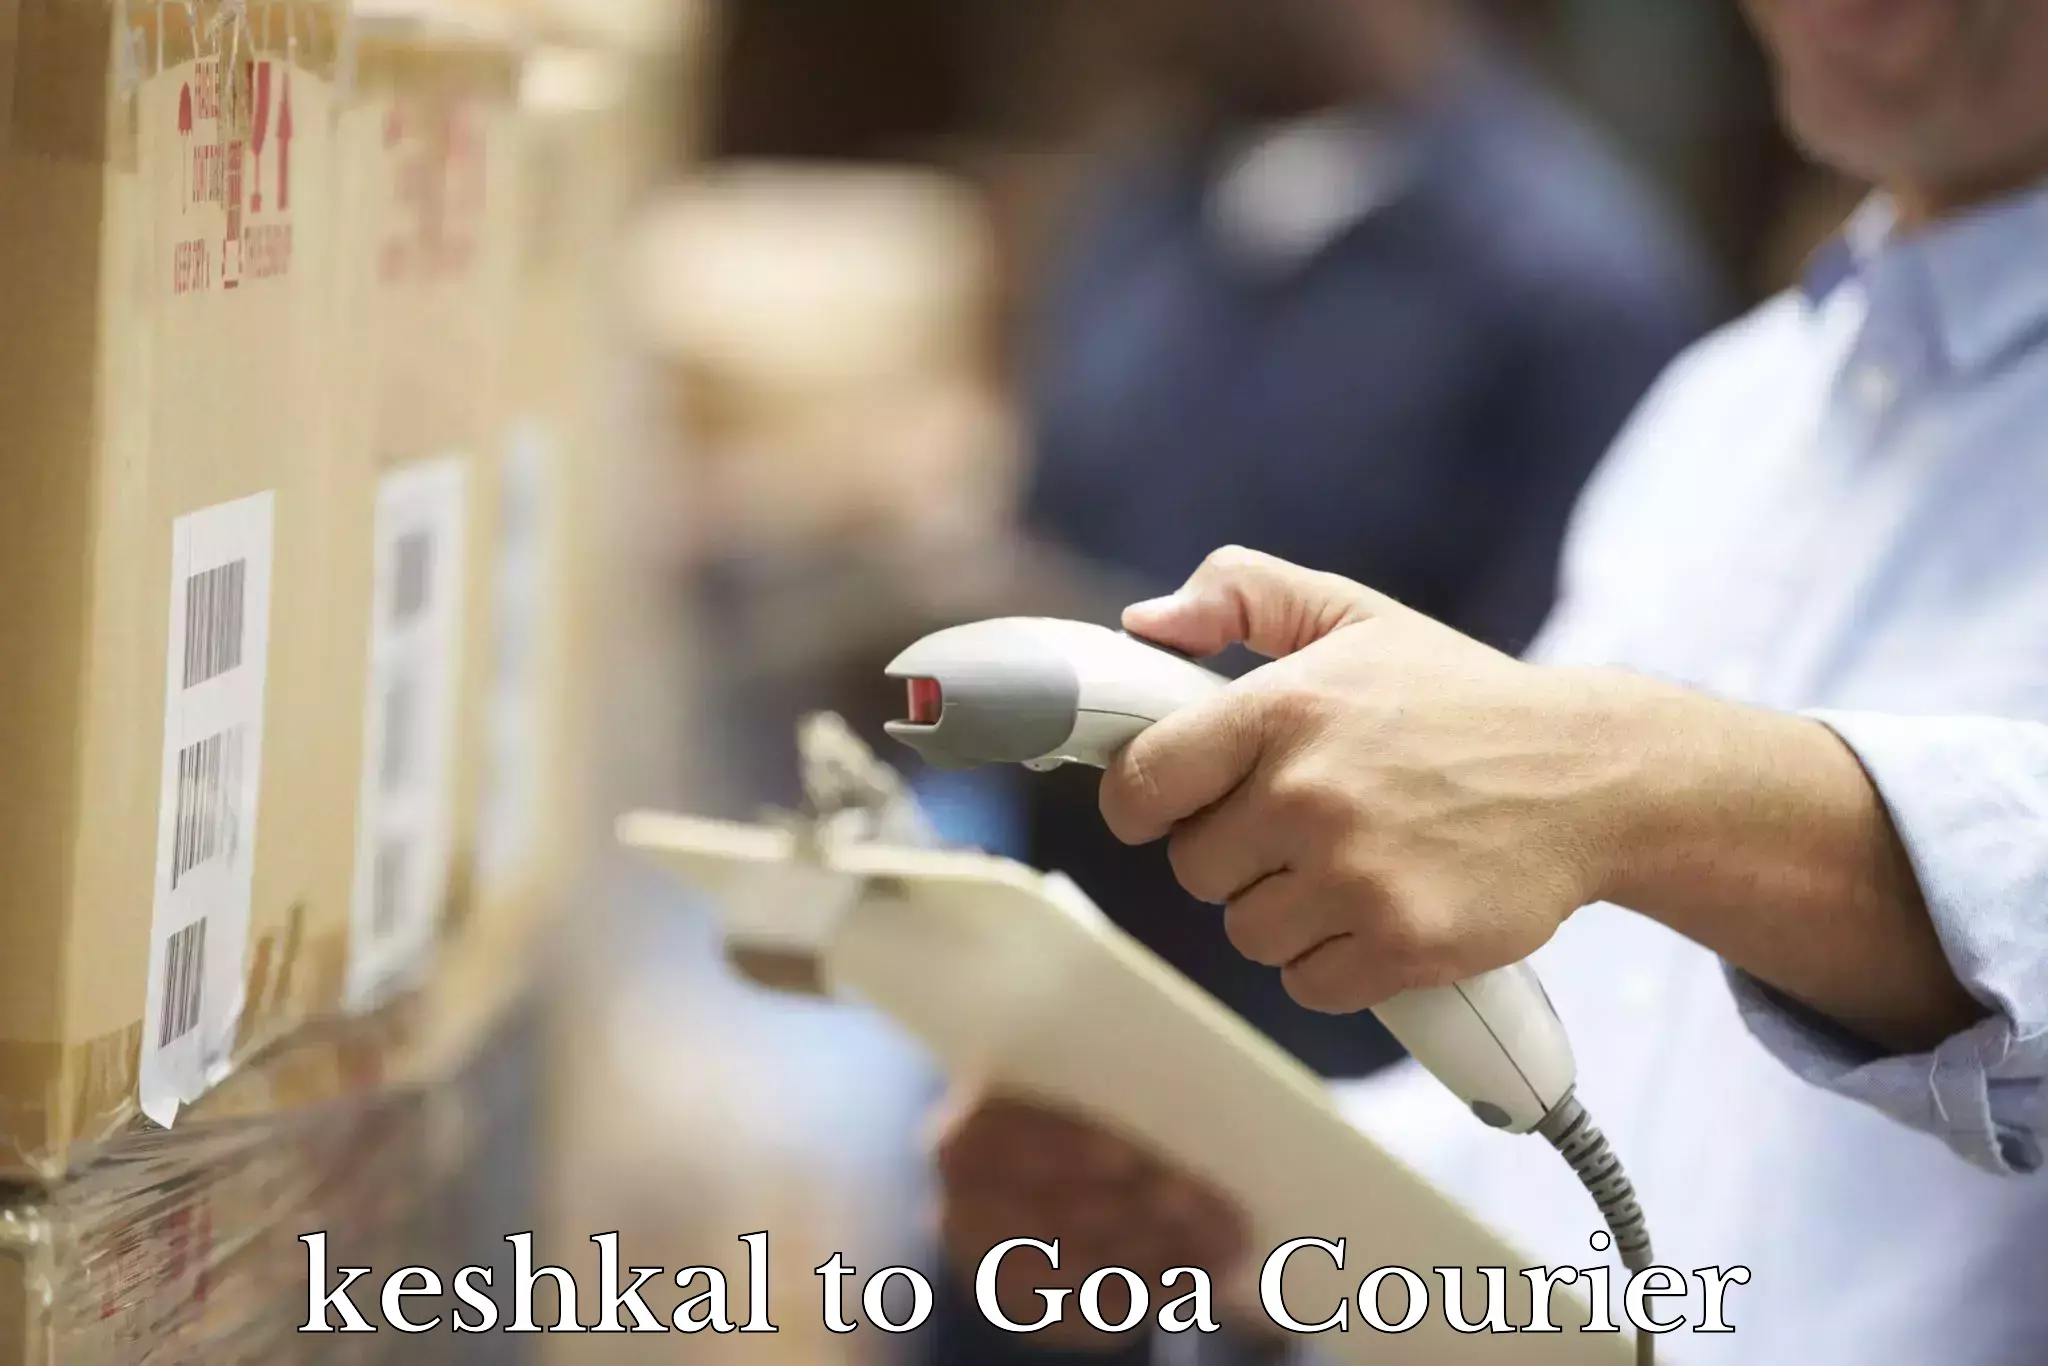 Bulk shipment keshkal to Goa University